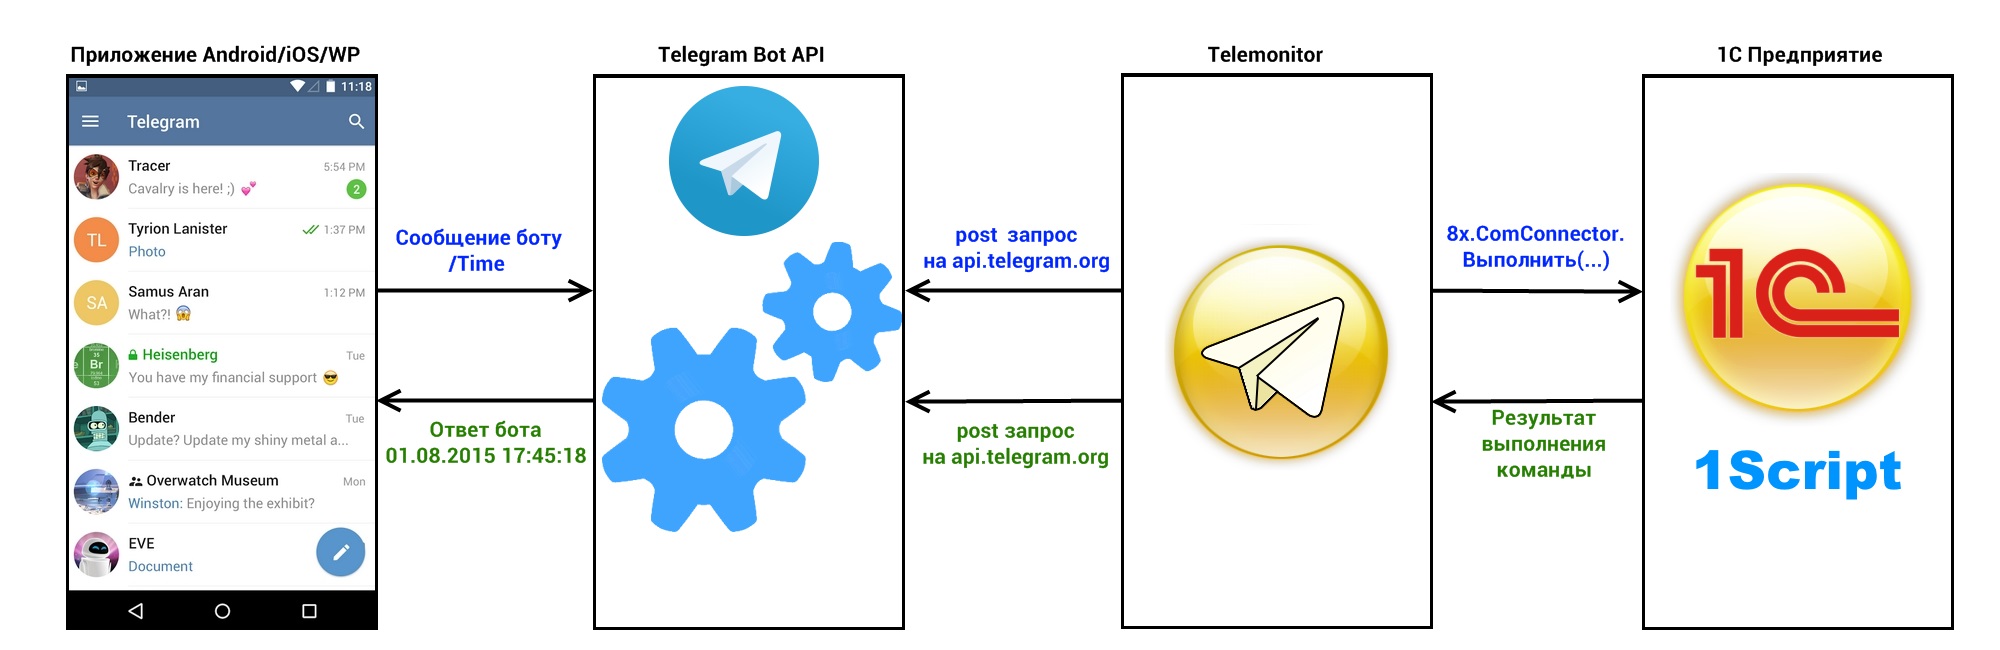 Схема работы Telegram и Telemonitor 1С